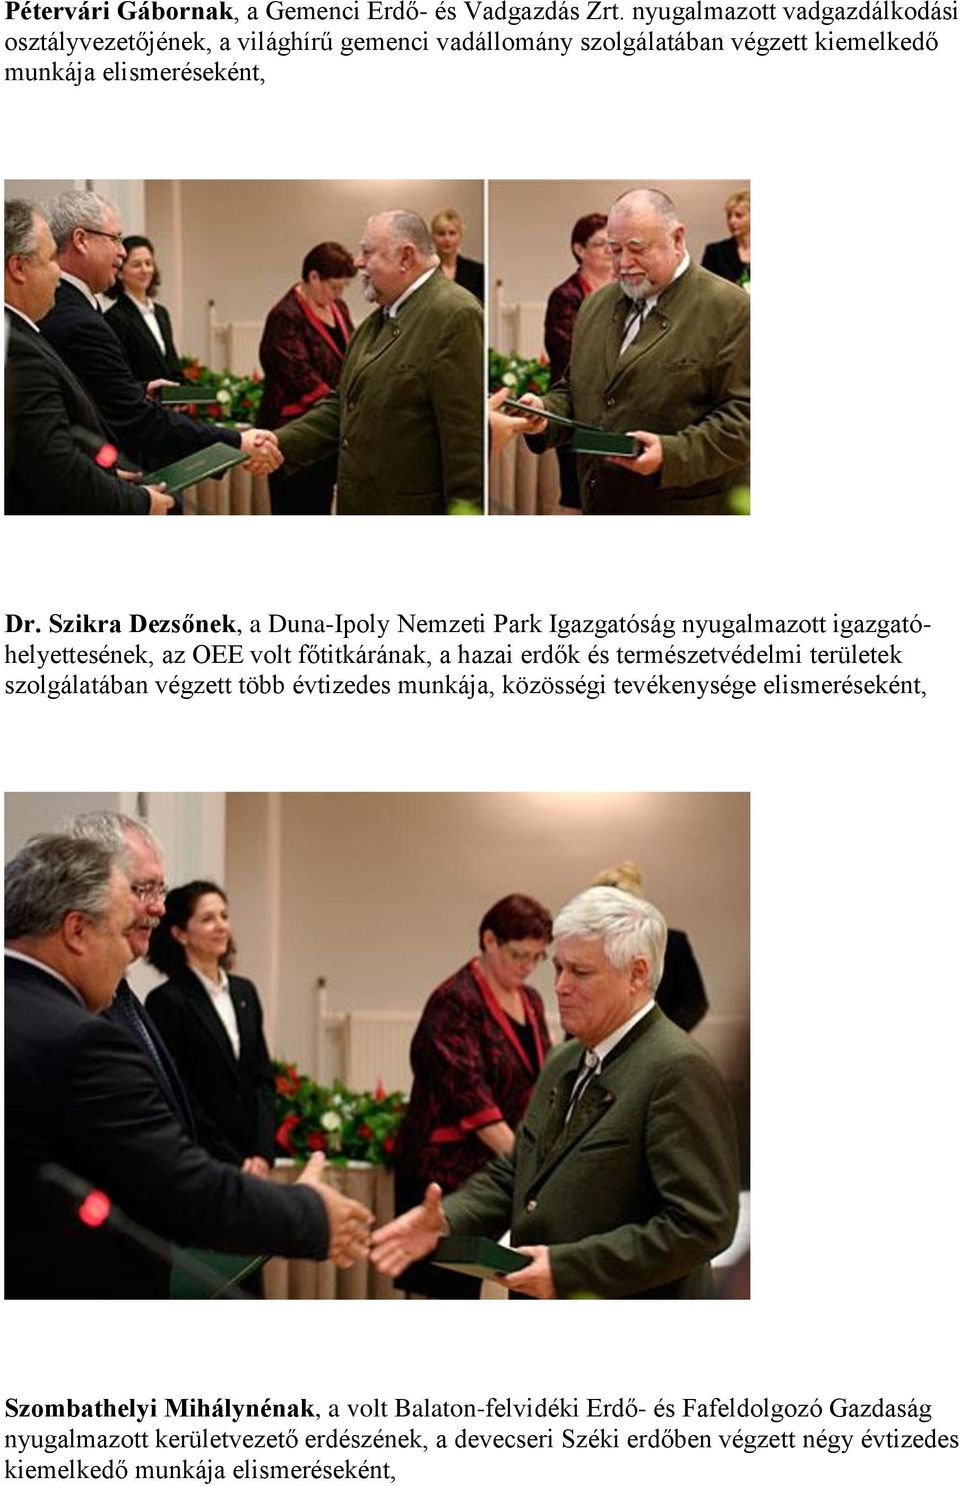 Szikra Dezsőnek, a Duna-Ipoly Nemzeti Park Igazgatóság nyugalmazott igazgatóhelyettesének, az OEE volt főtitkárának, a hazai erdők és természetvédelmi területek